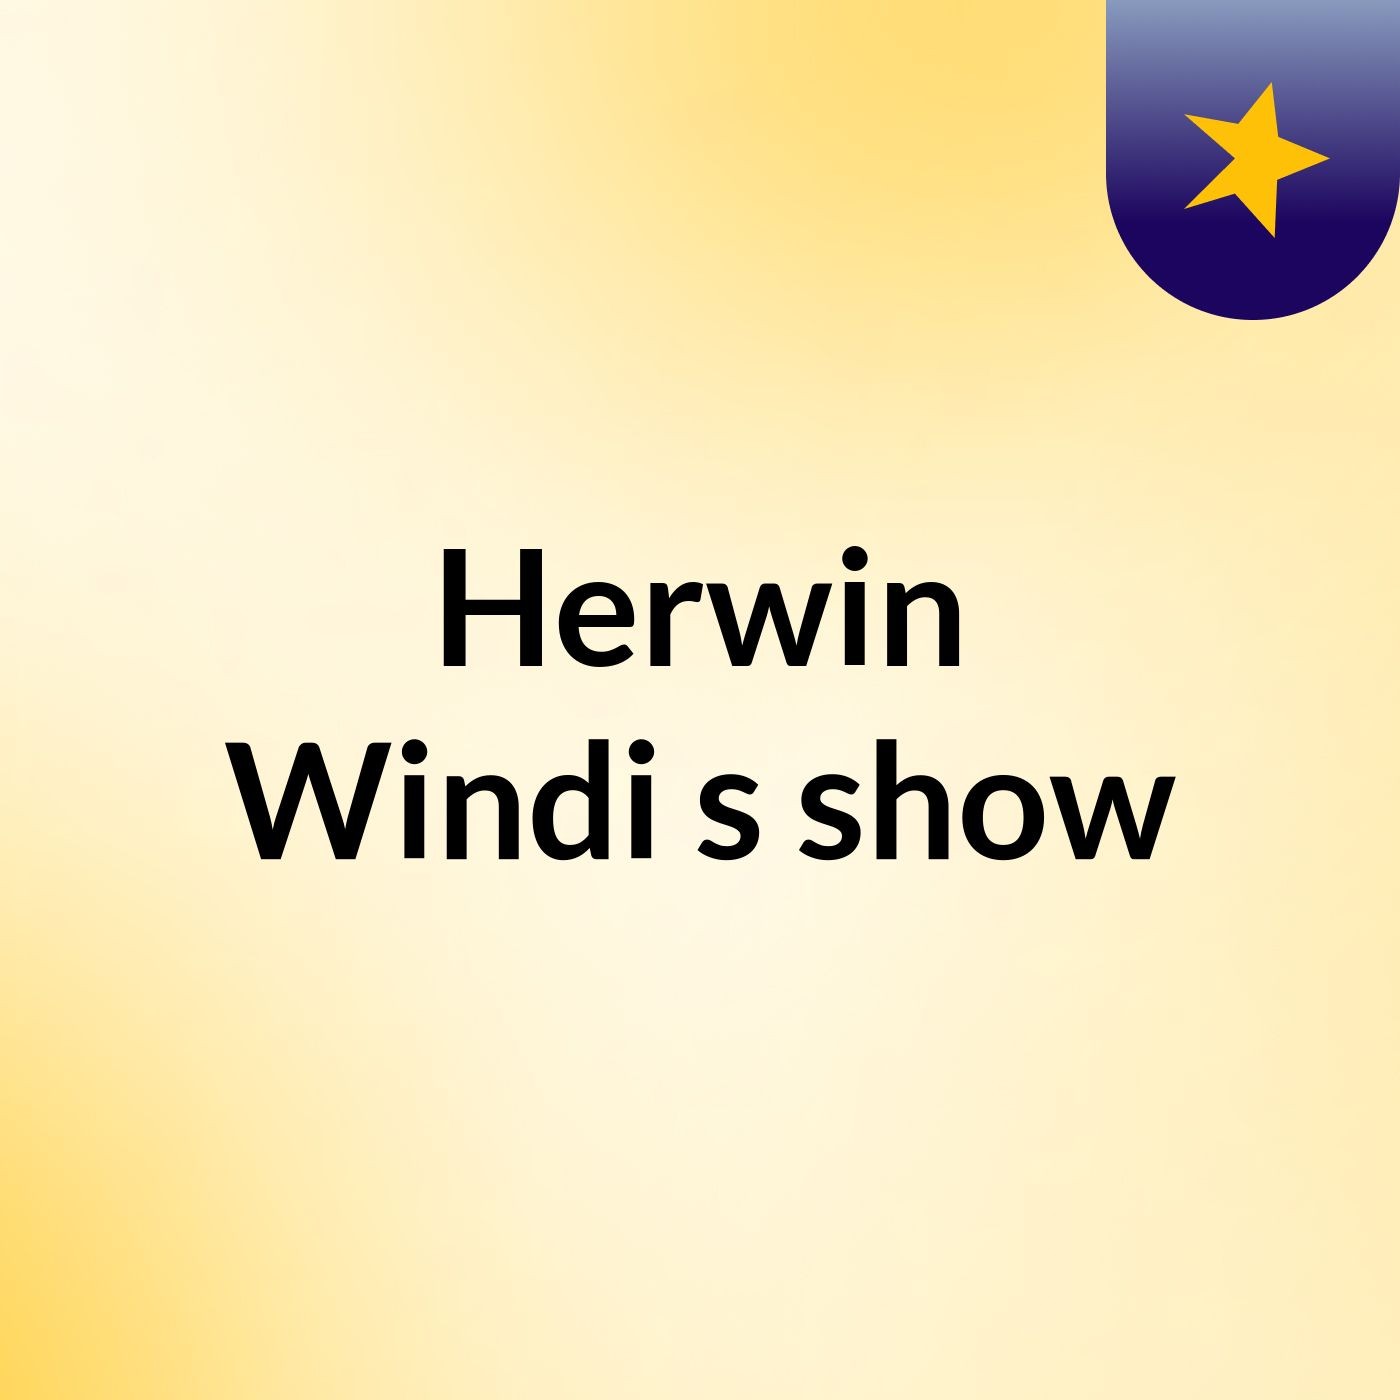 Herwin Windi's show